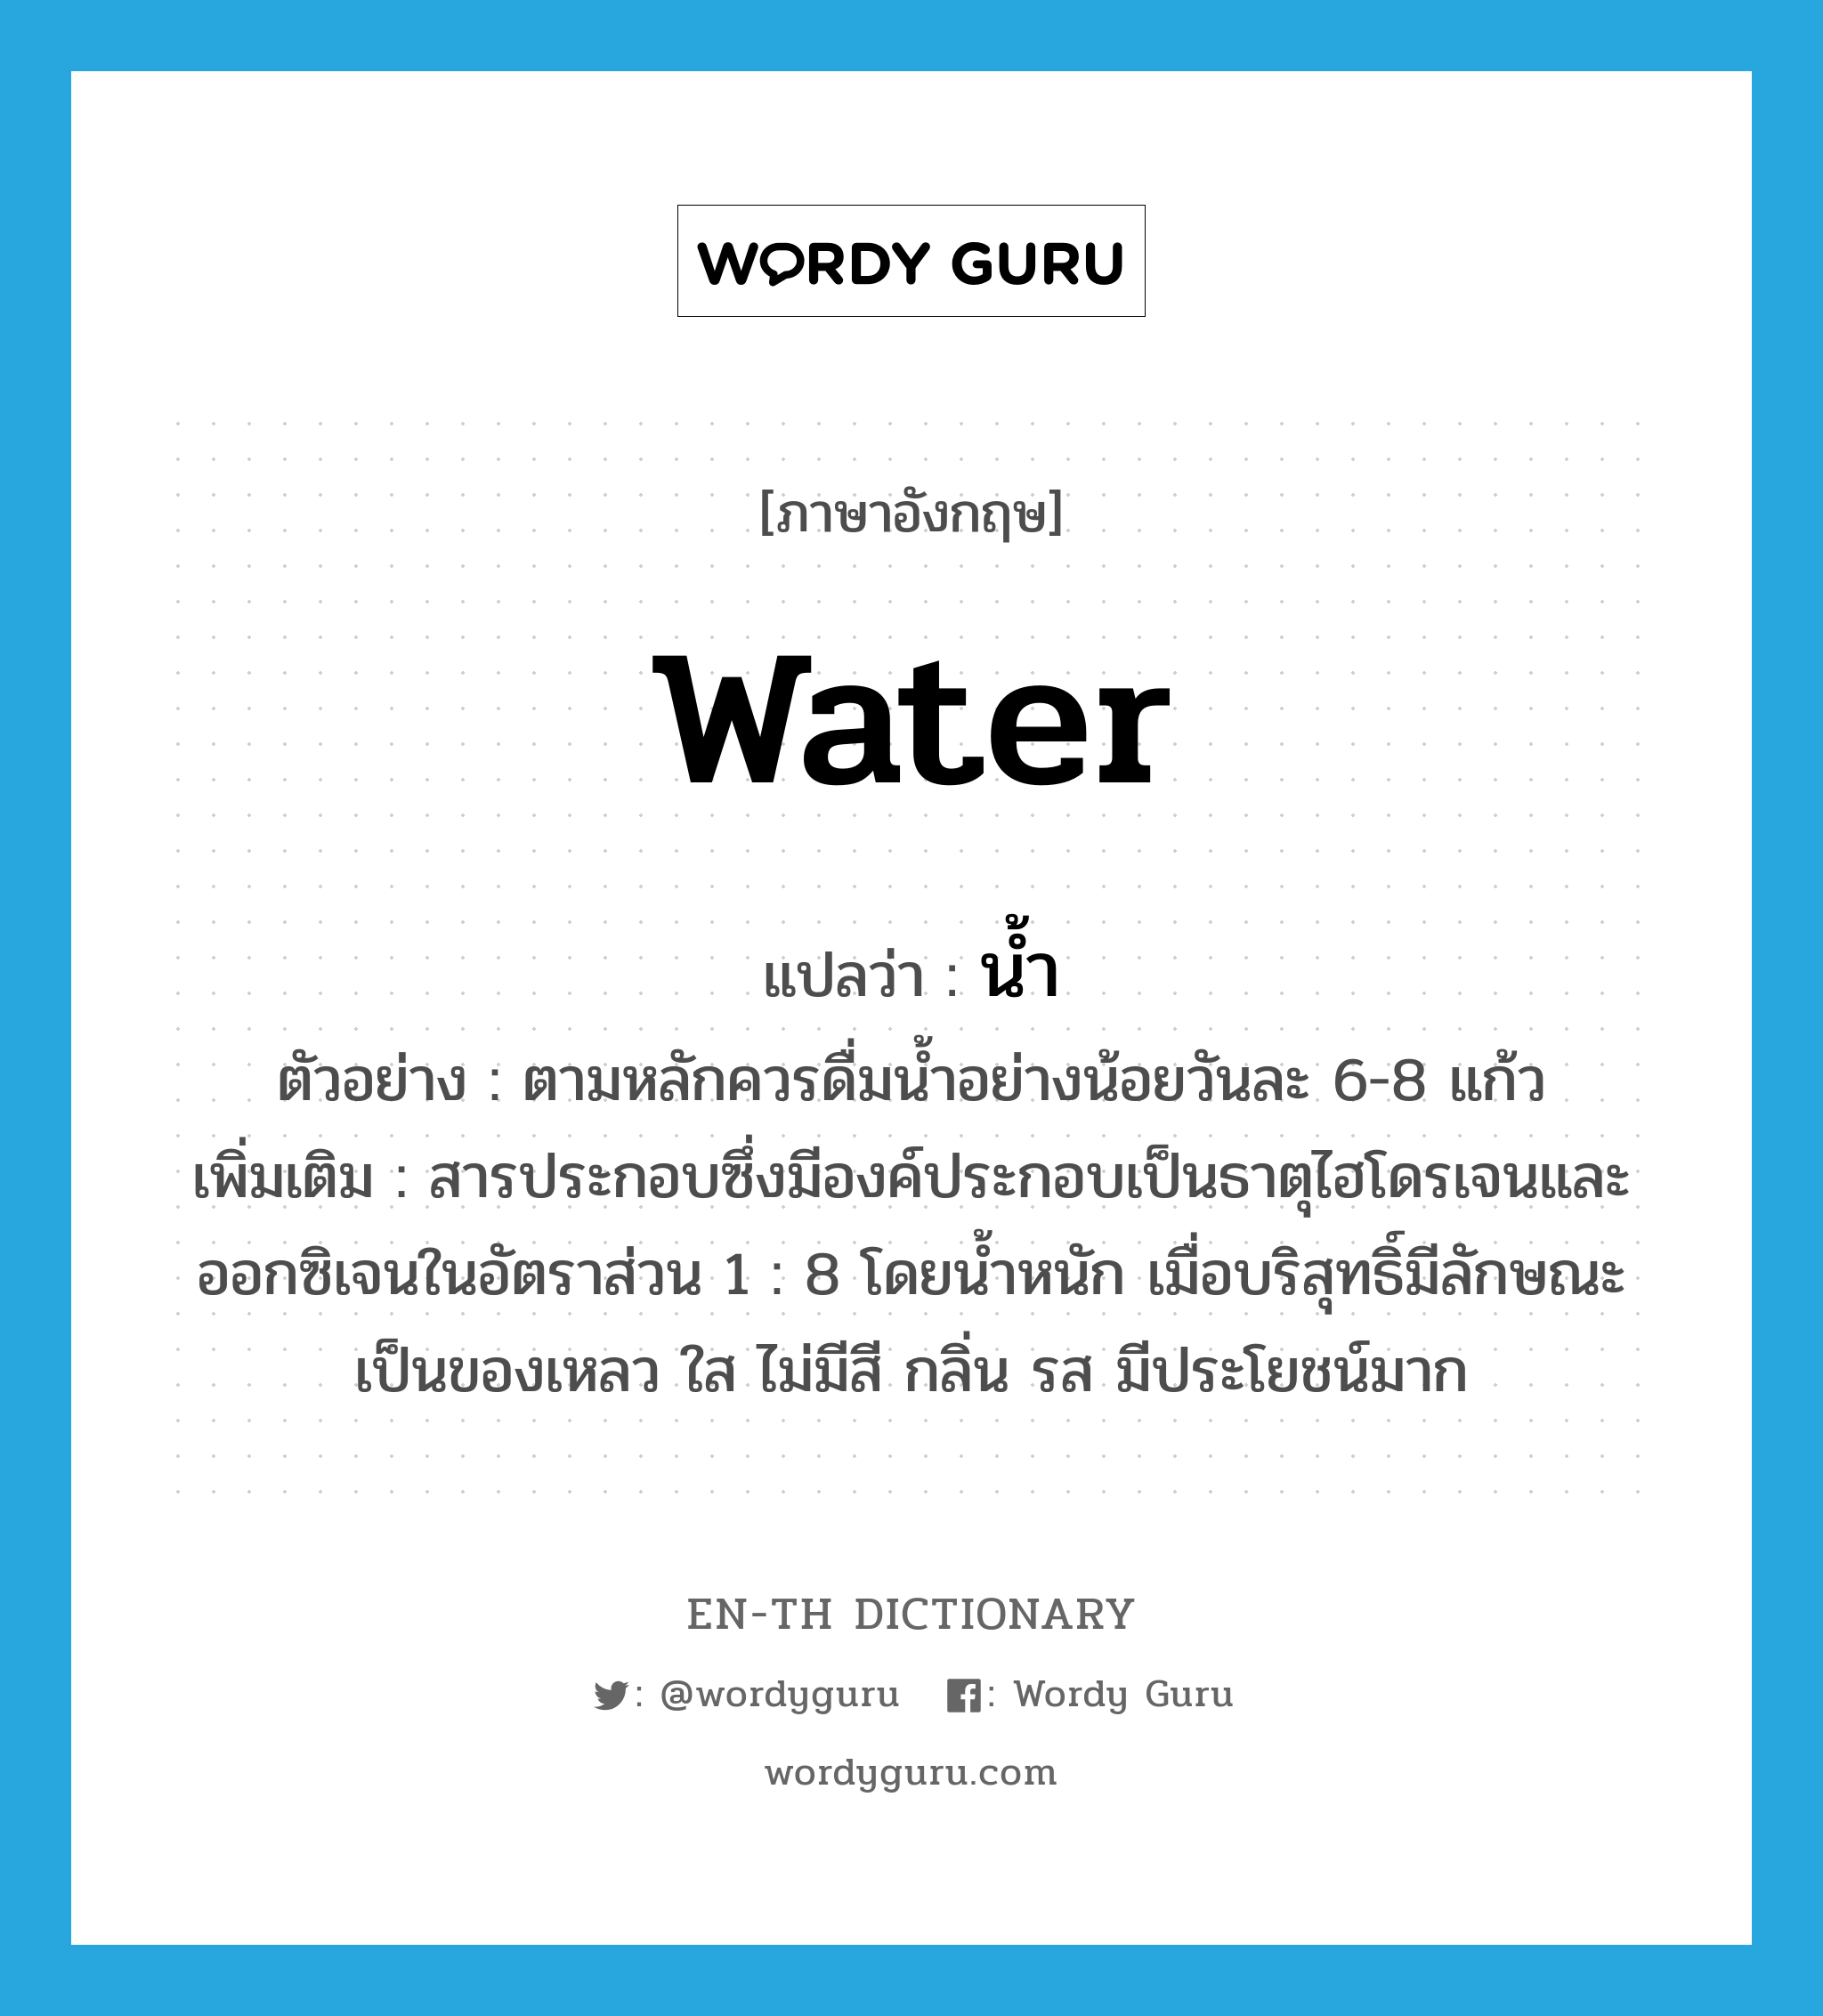 water แปลว่า?, คำศัพท์ภาษาอังกฤษ water แปลว่า น้ำ ประเภท N ตัวอย่าง ตามหลักควรดื่มน้ำอย่างน้อยวันละ 6-8 แก้ว เพิ่มเติม สารประกอบซึ่งมีองค์ประกอบเป็นธาตุไฮโดรเจนและออกซิเจนในอัตราส่วน 1 : 8 โดยน้ำหนัก เมื่อบริสุทธิ์มีลักษณะเป็นของเหลว ใส ไม่มีสี กลิ่น รส มีประโยชน์มาก หมวด N